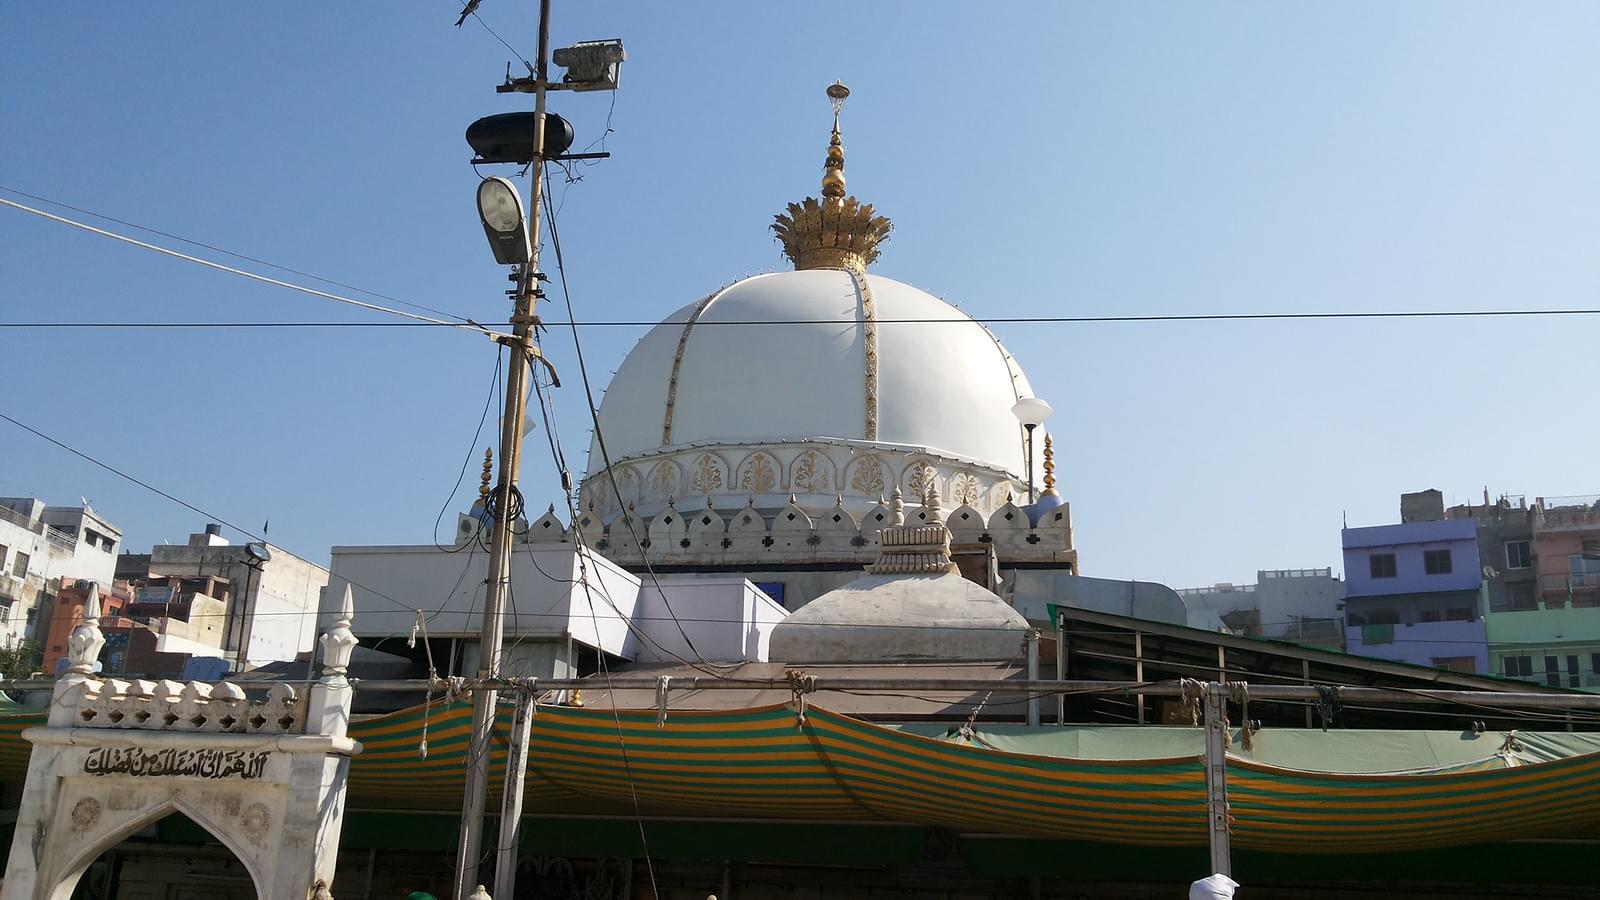 Khwaja Gharib Nawaz Dargah Sharif